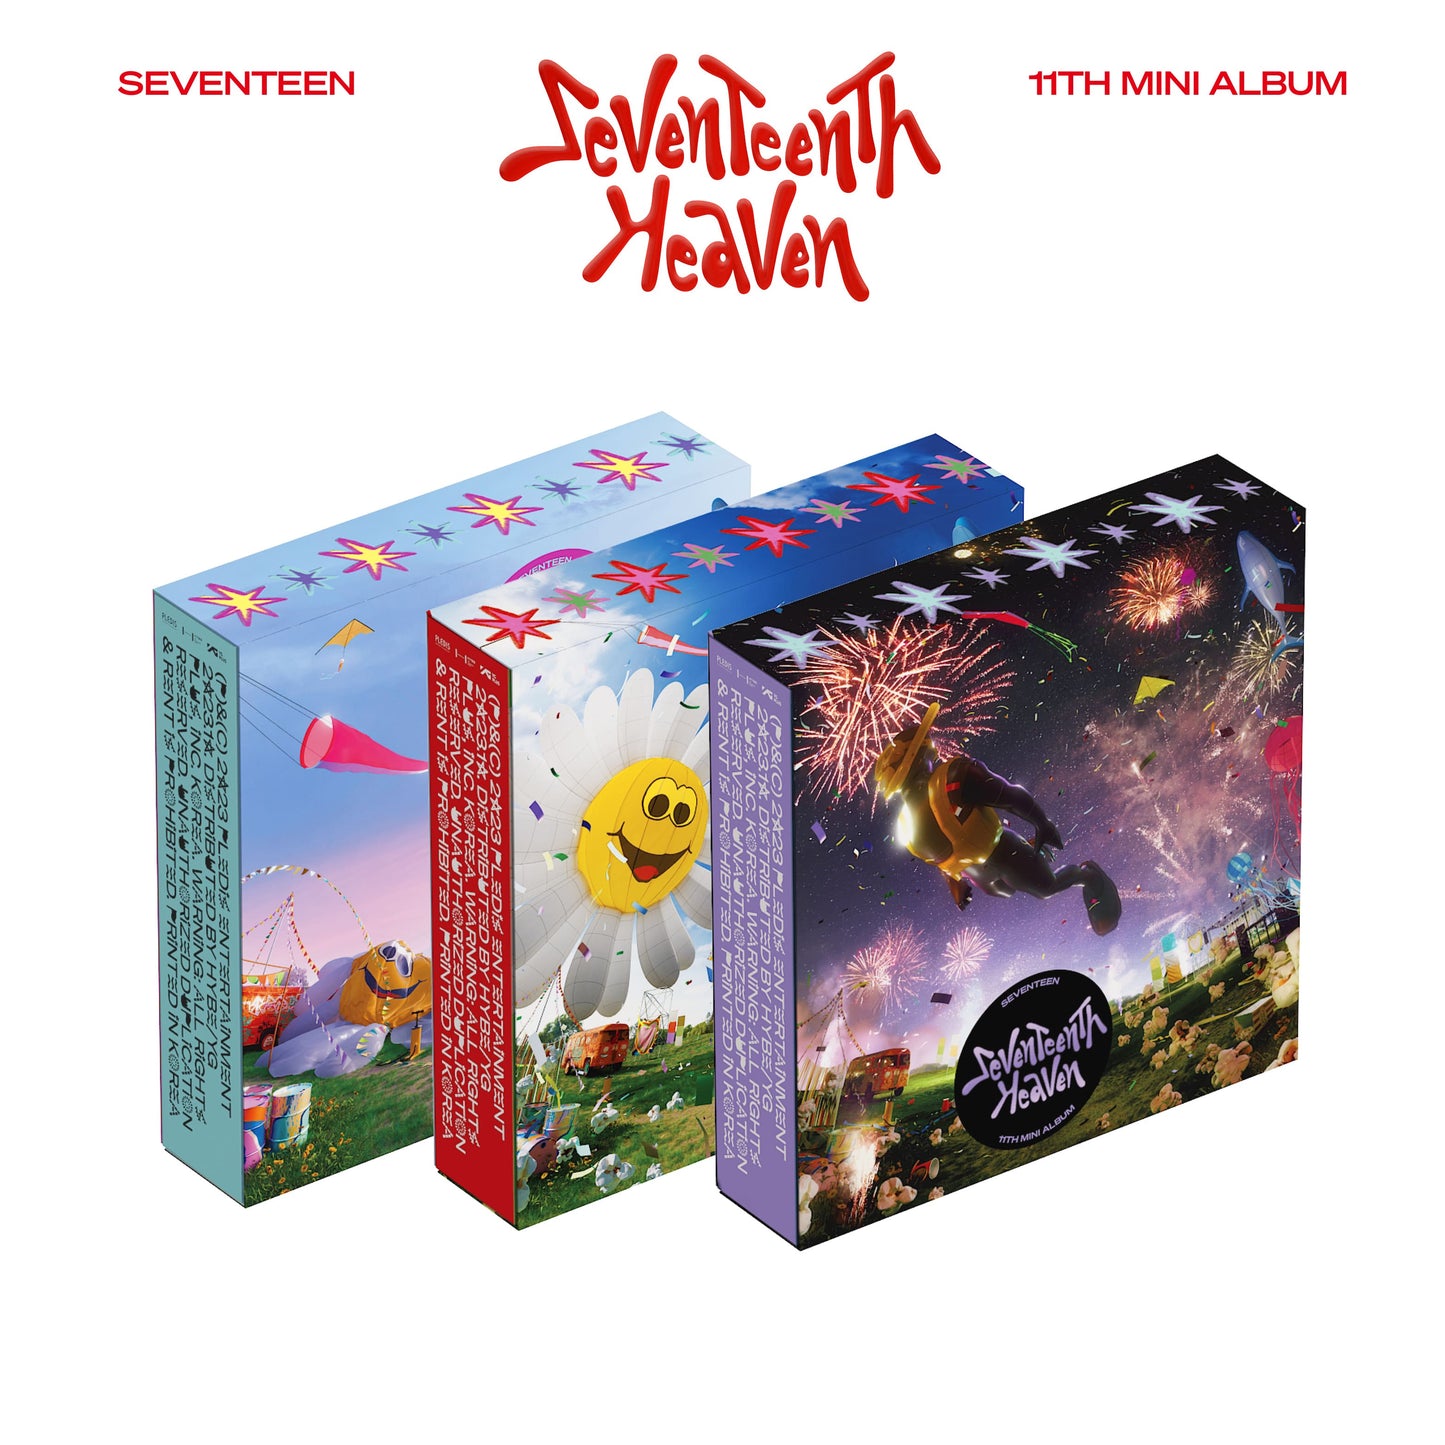 Seventeen 세븐틴 - 11th Mini-Album 'Seventeenth Heaven' + Soundwave POB